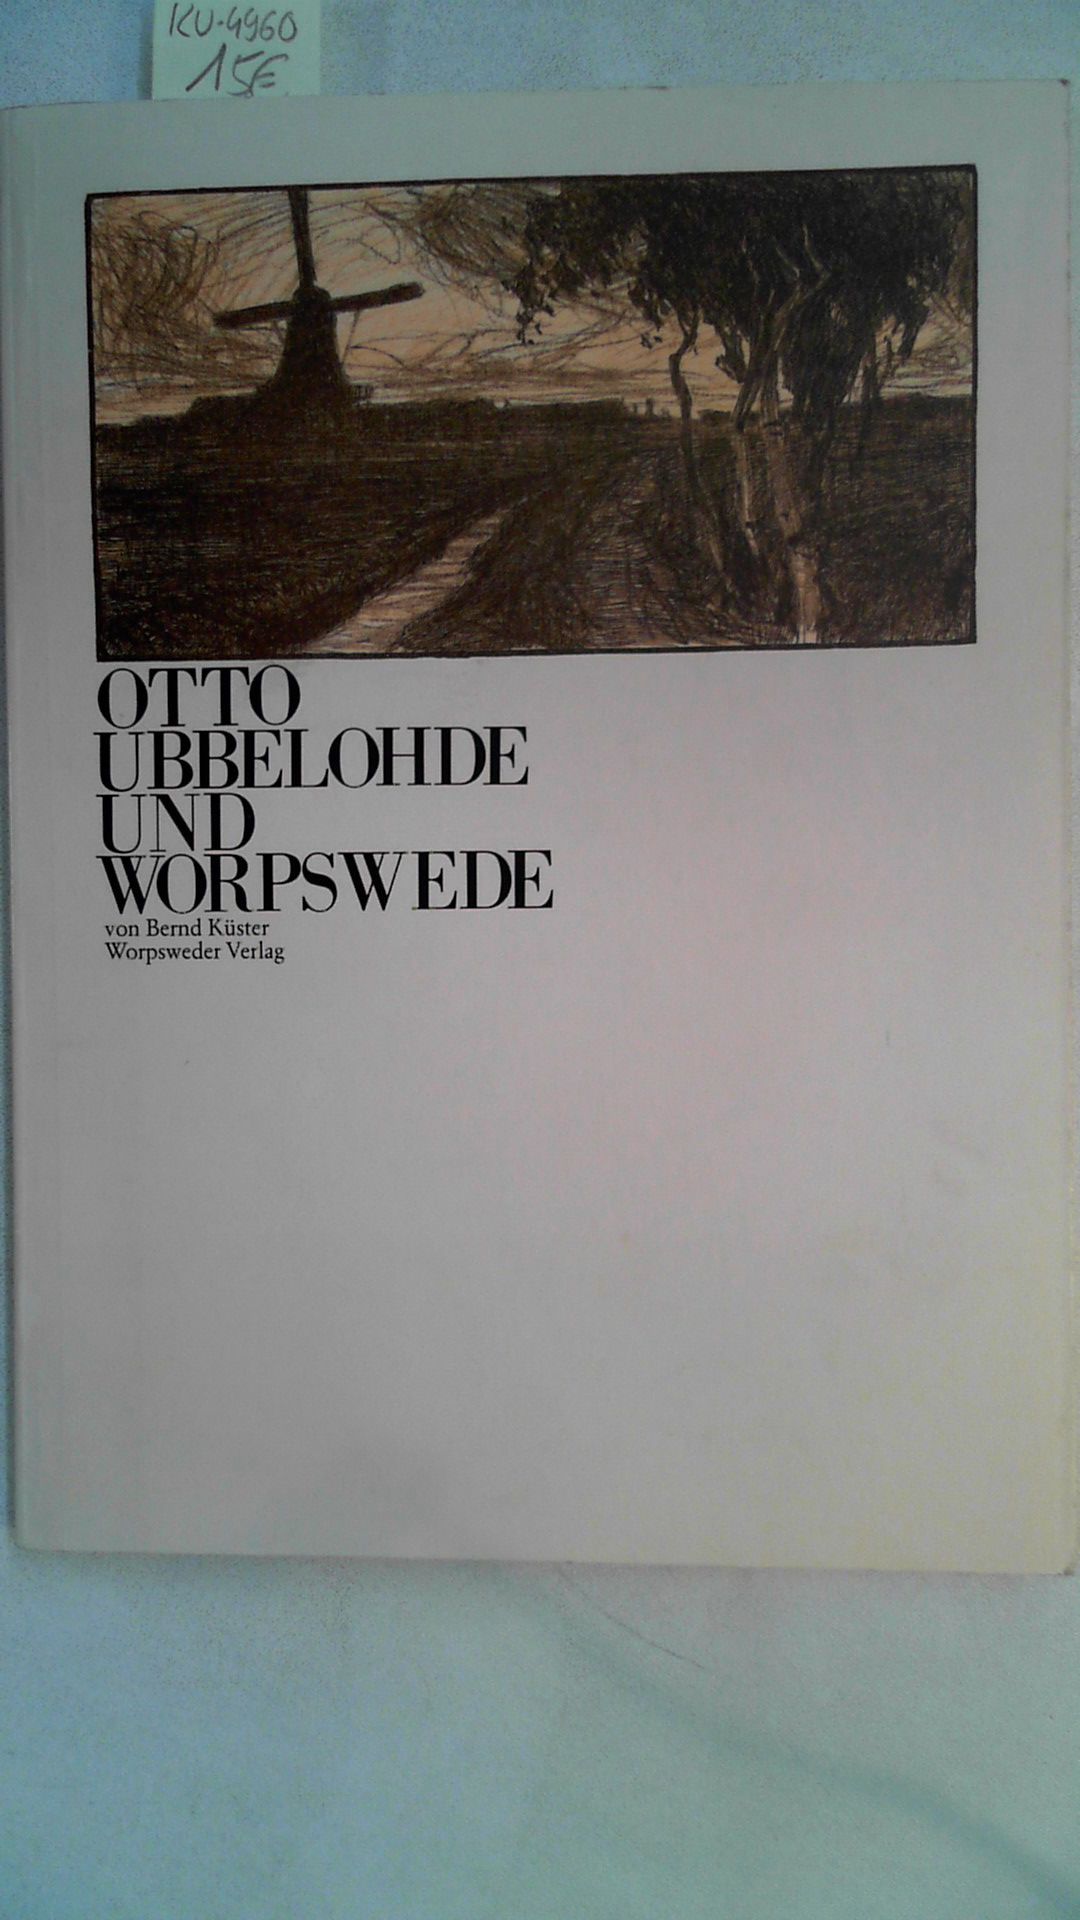 Orro Ubbelohde und Worpswede. Herausgeber: Landesmuseum Oldenburg und Barkenhoff-Stiftung, Worpswede. - Küster, Bernd